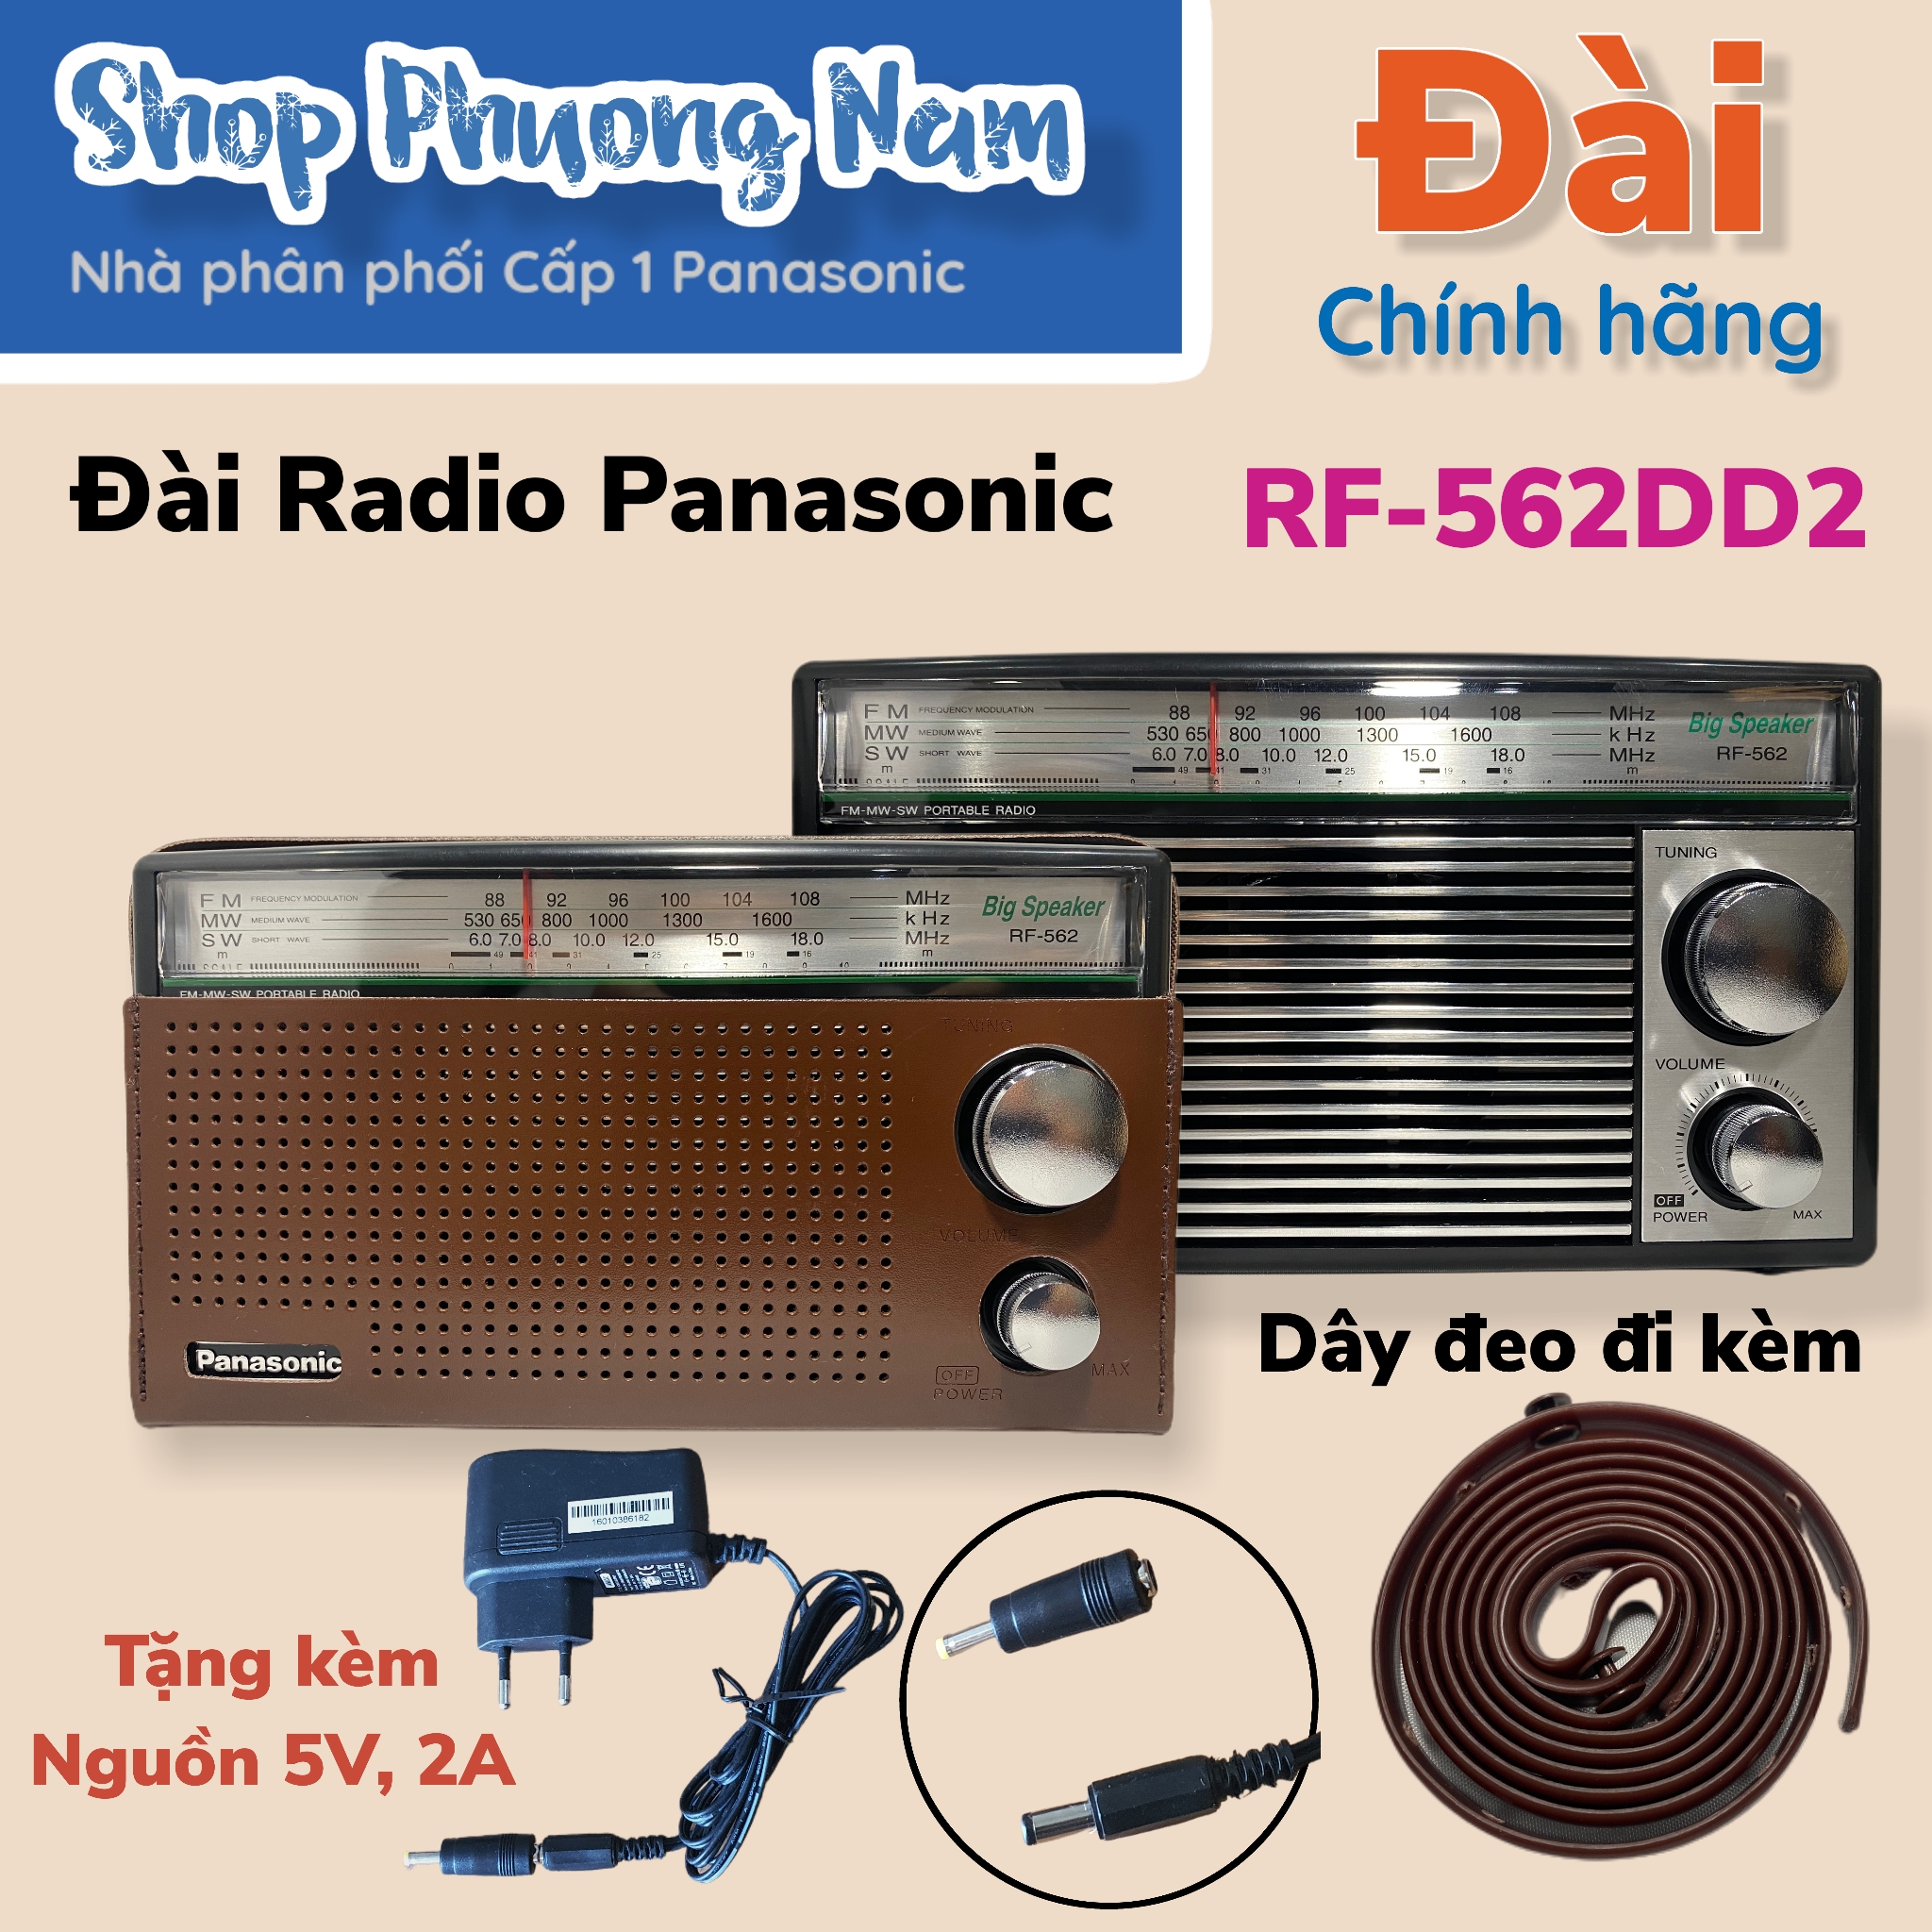 Radio Panasonic RF-562DD (Hàng chính hãng)